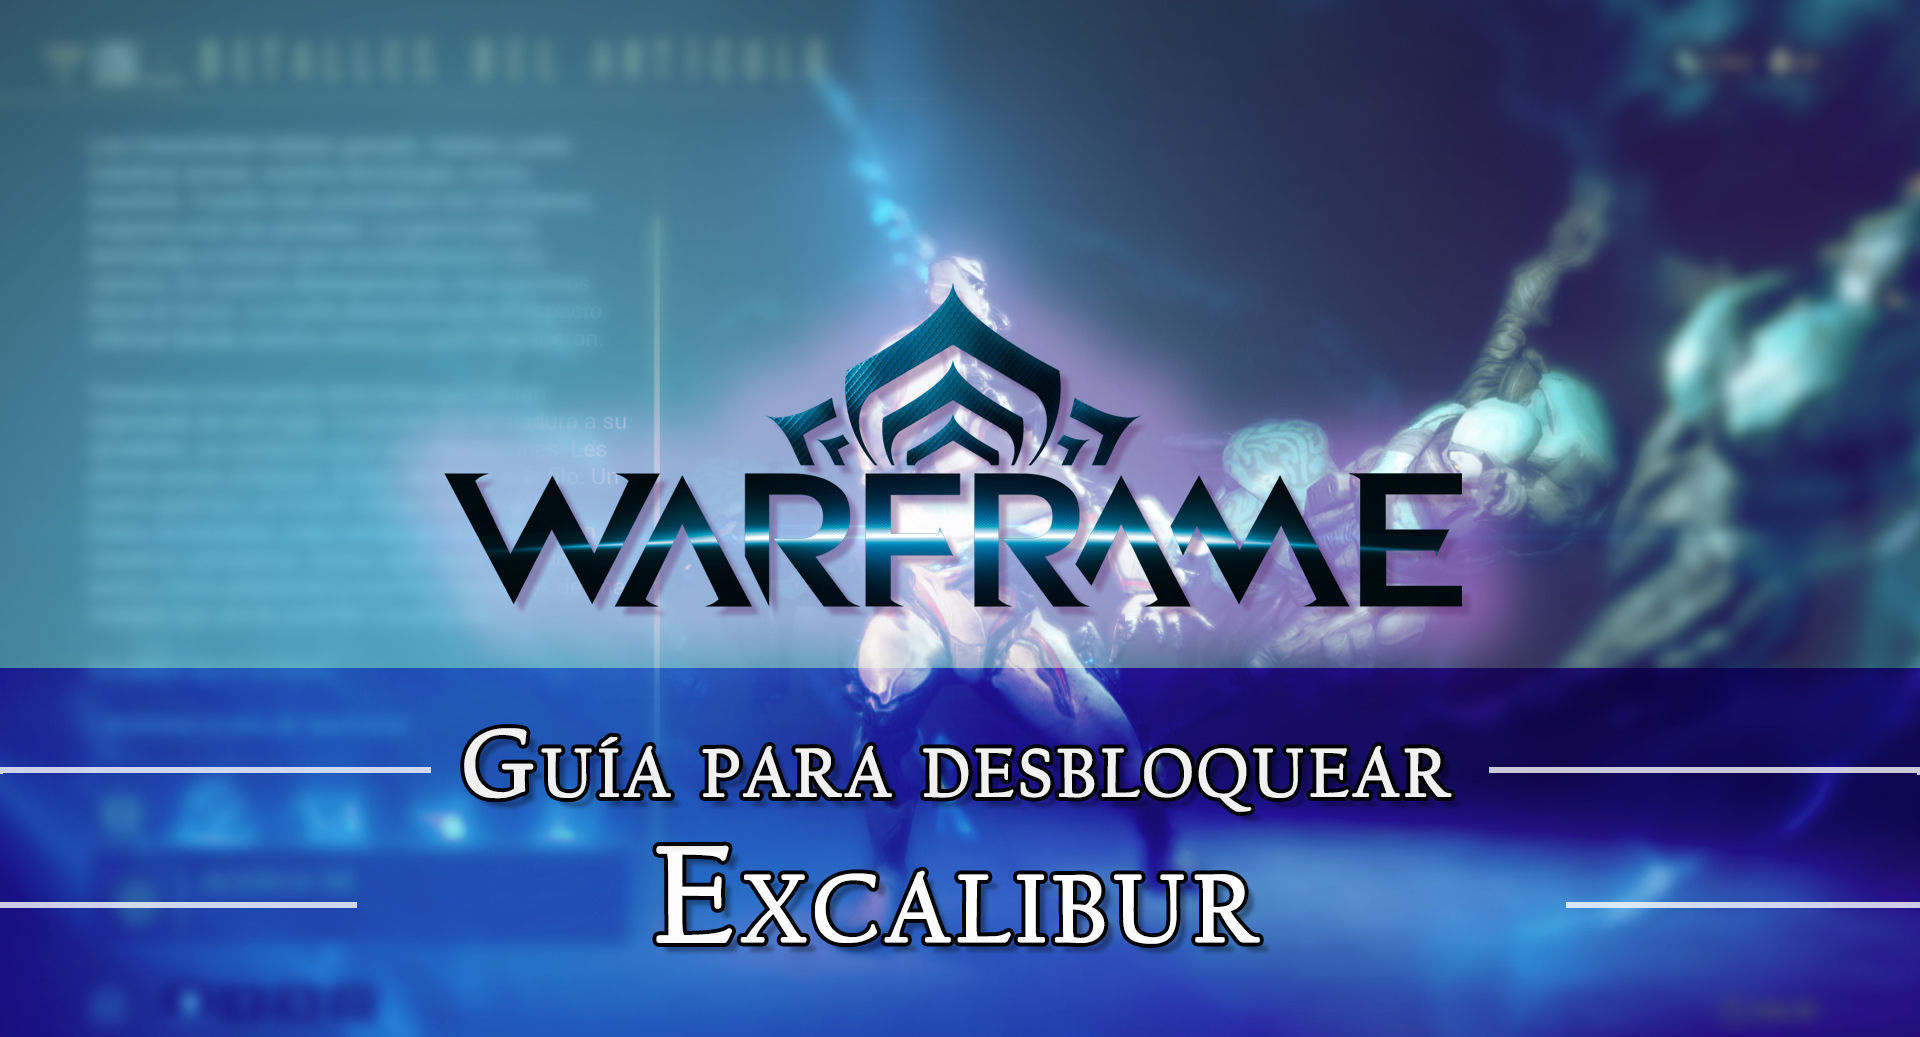 Warframe Excalibur: cmo conseguirlo, planos, requisitos y estadsticas - Warframe